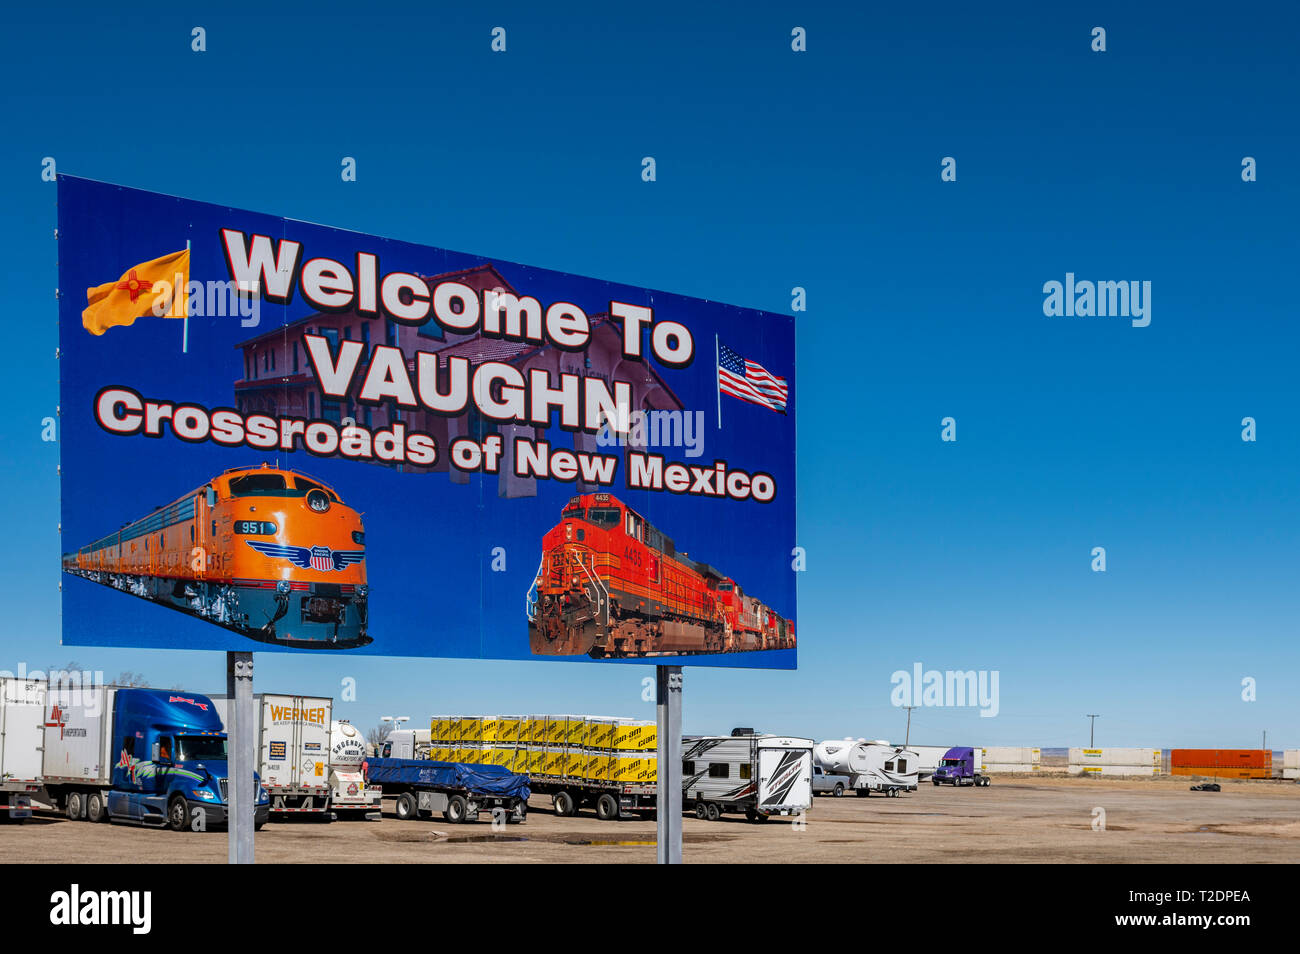 Anmelden, um Vaughn, New Mexico, USA eine Kreuzung für Burlington Northern Santa Fe und Union Pacific Railroad lines Willkommen. Stockfoto